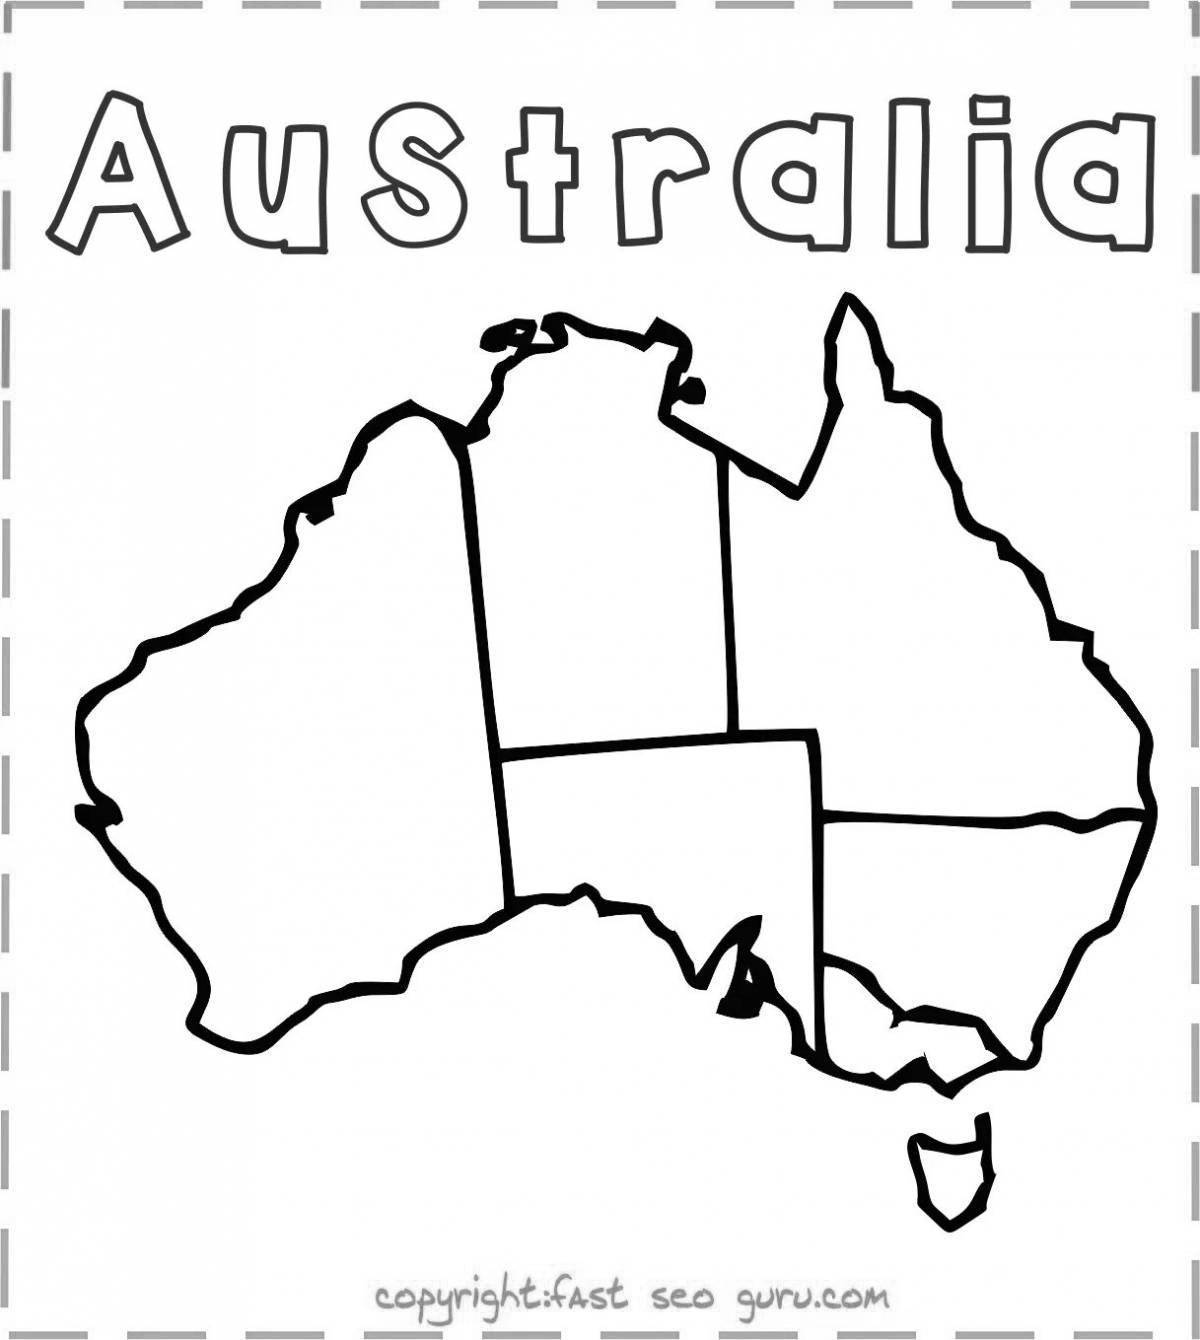 Карта Австралии раскраска